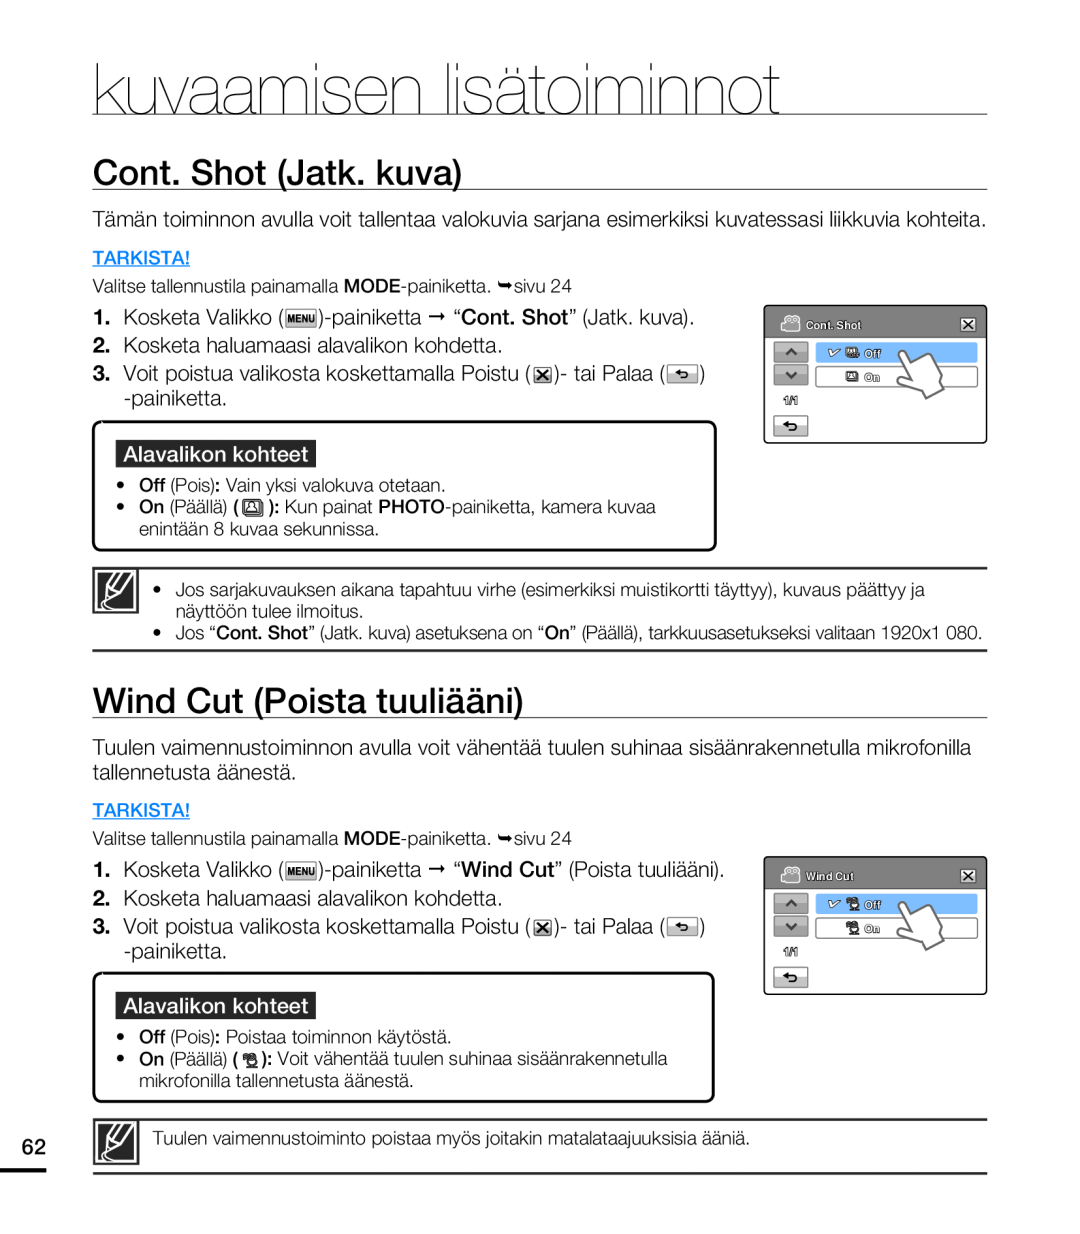 Samsung HMX-T10WP/EDC manual Cont. Shot Jatk. kuva, Wind Cut Poista tuuliääni, kuvaamisen lisätoiminnot, Alavalikon kohteet 